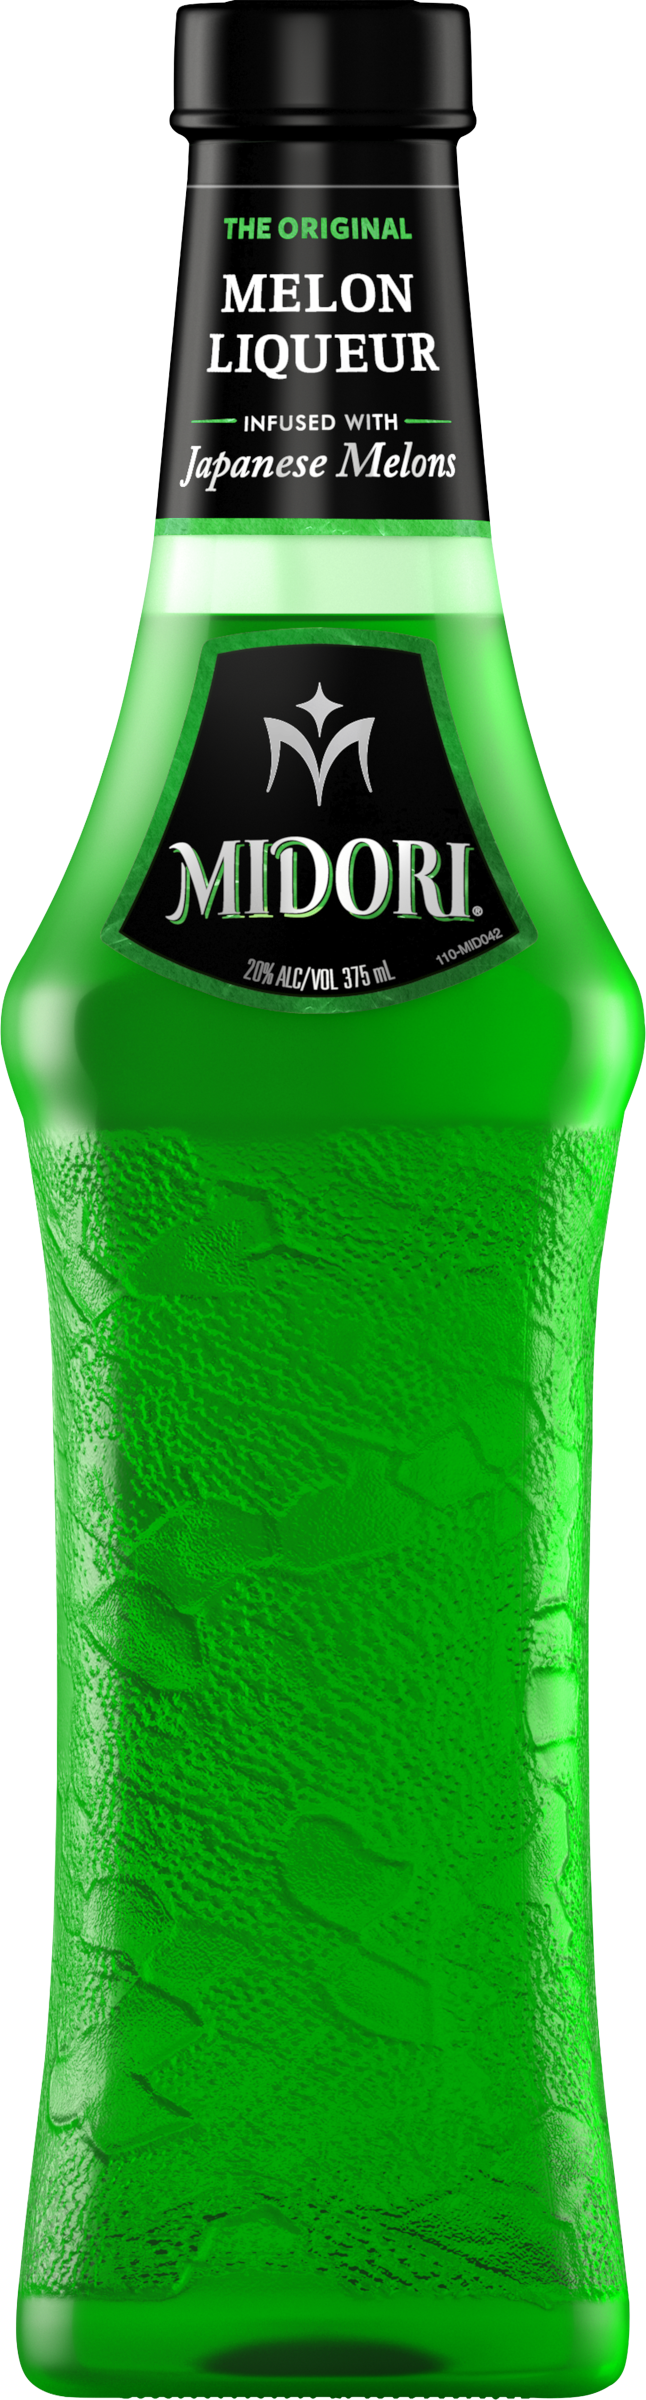 Midori Melon Liqueur 1.0L